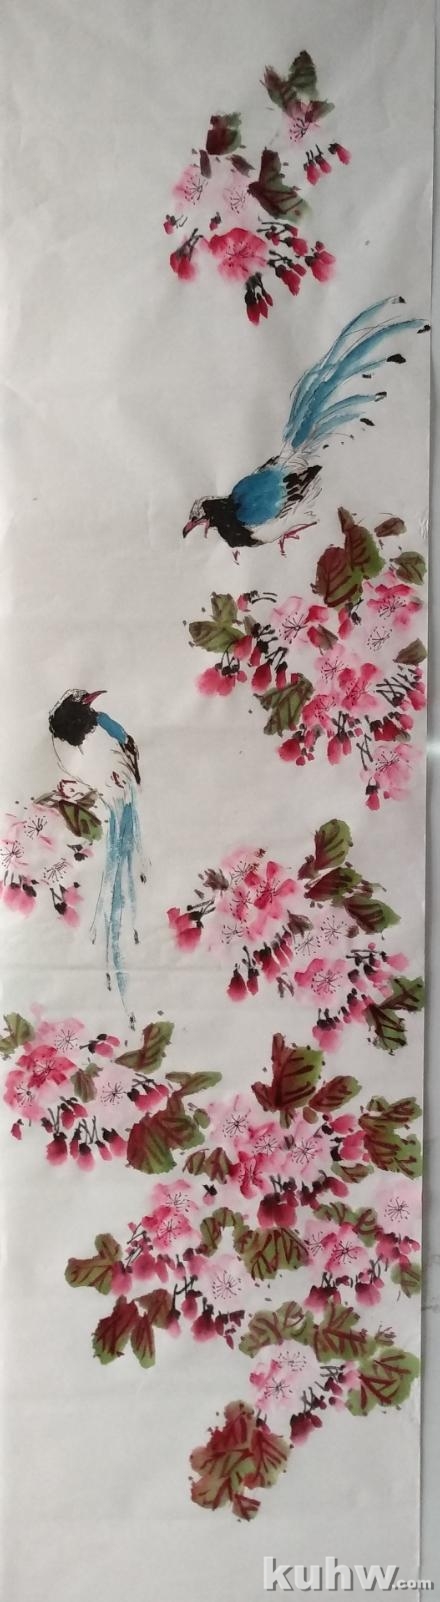 《红云一抹泛朝霞》——红嘴蓝鹊和樱花的画法